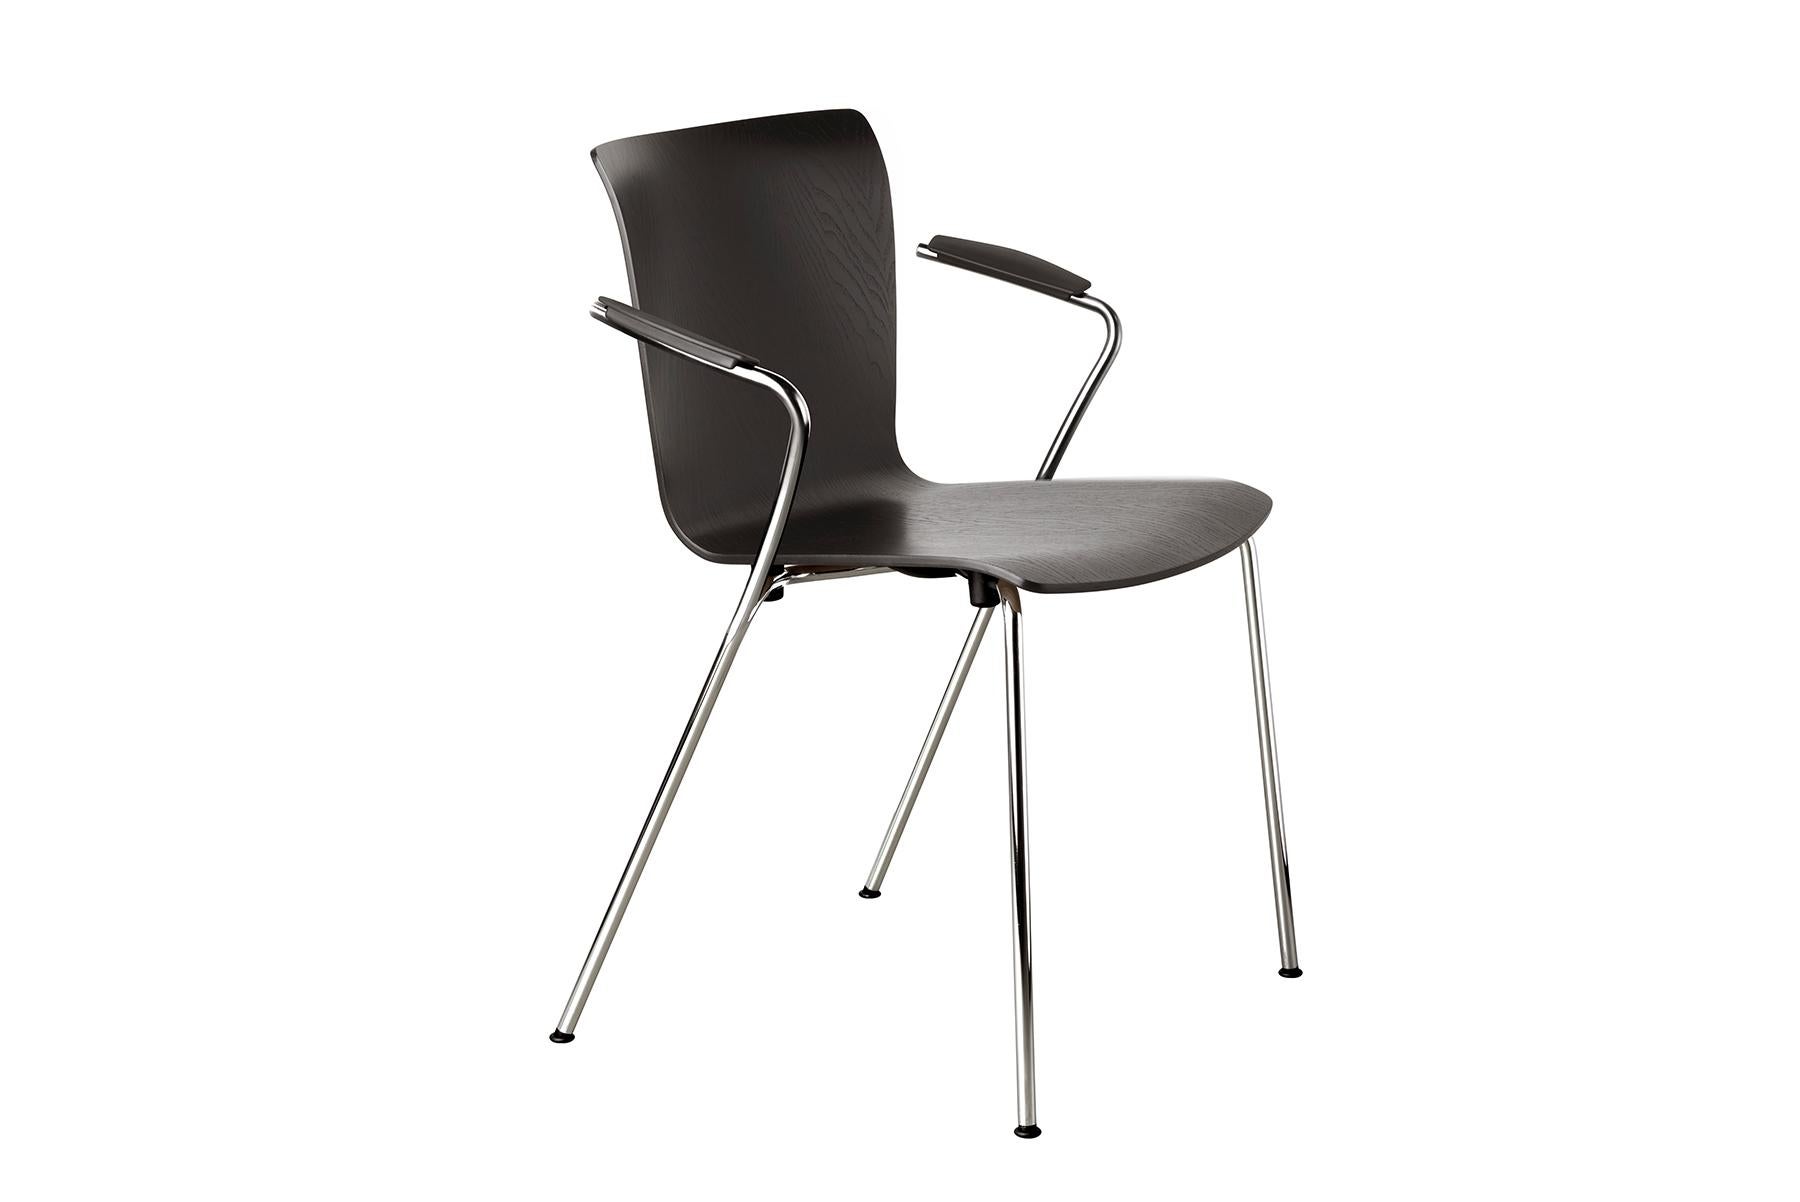 La Vico Duo est une élégante chaise empilable en placage de Vico Magistretti, polyvalente et parfaitement adaptée aux espaces de travail agiles et au design d'accueil.

La chaise est simple avec des lignes tendues. Une ligne en 